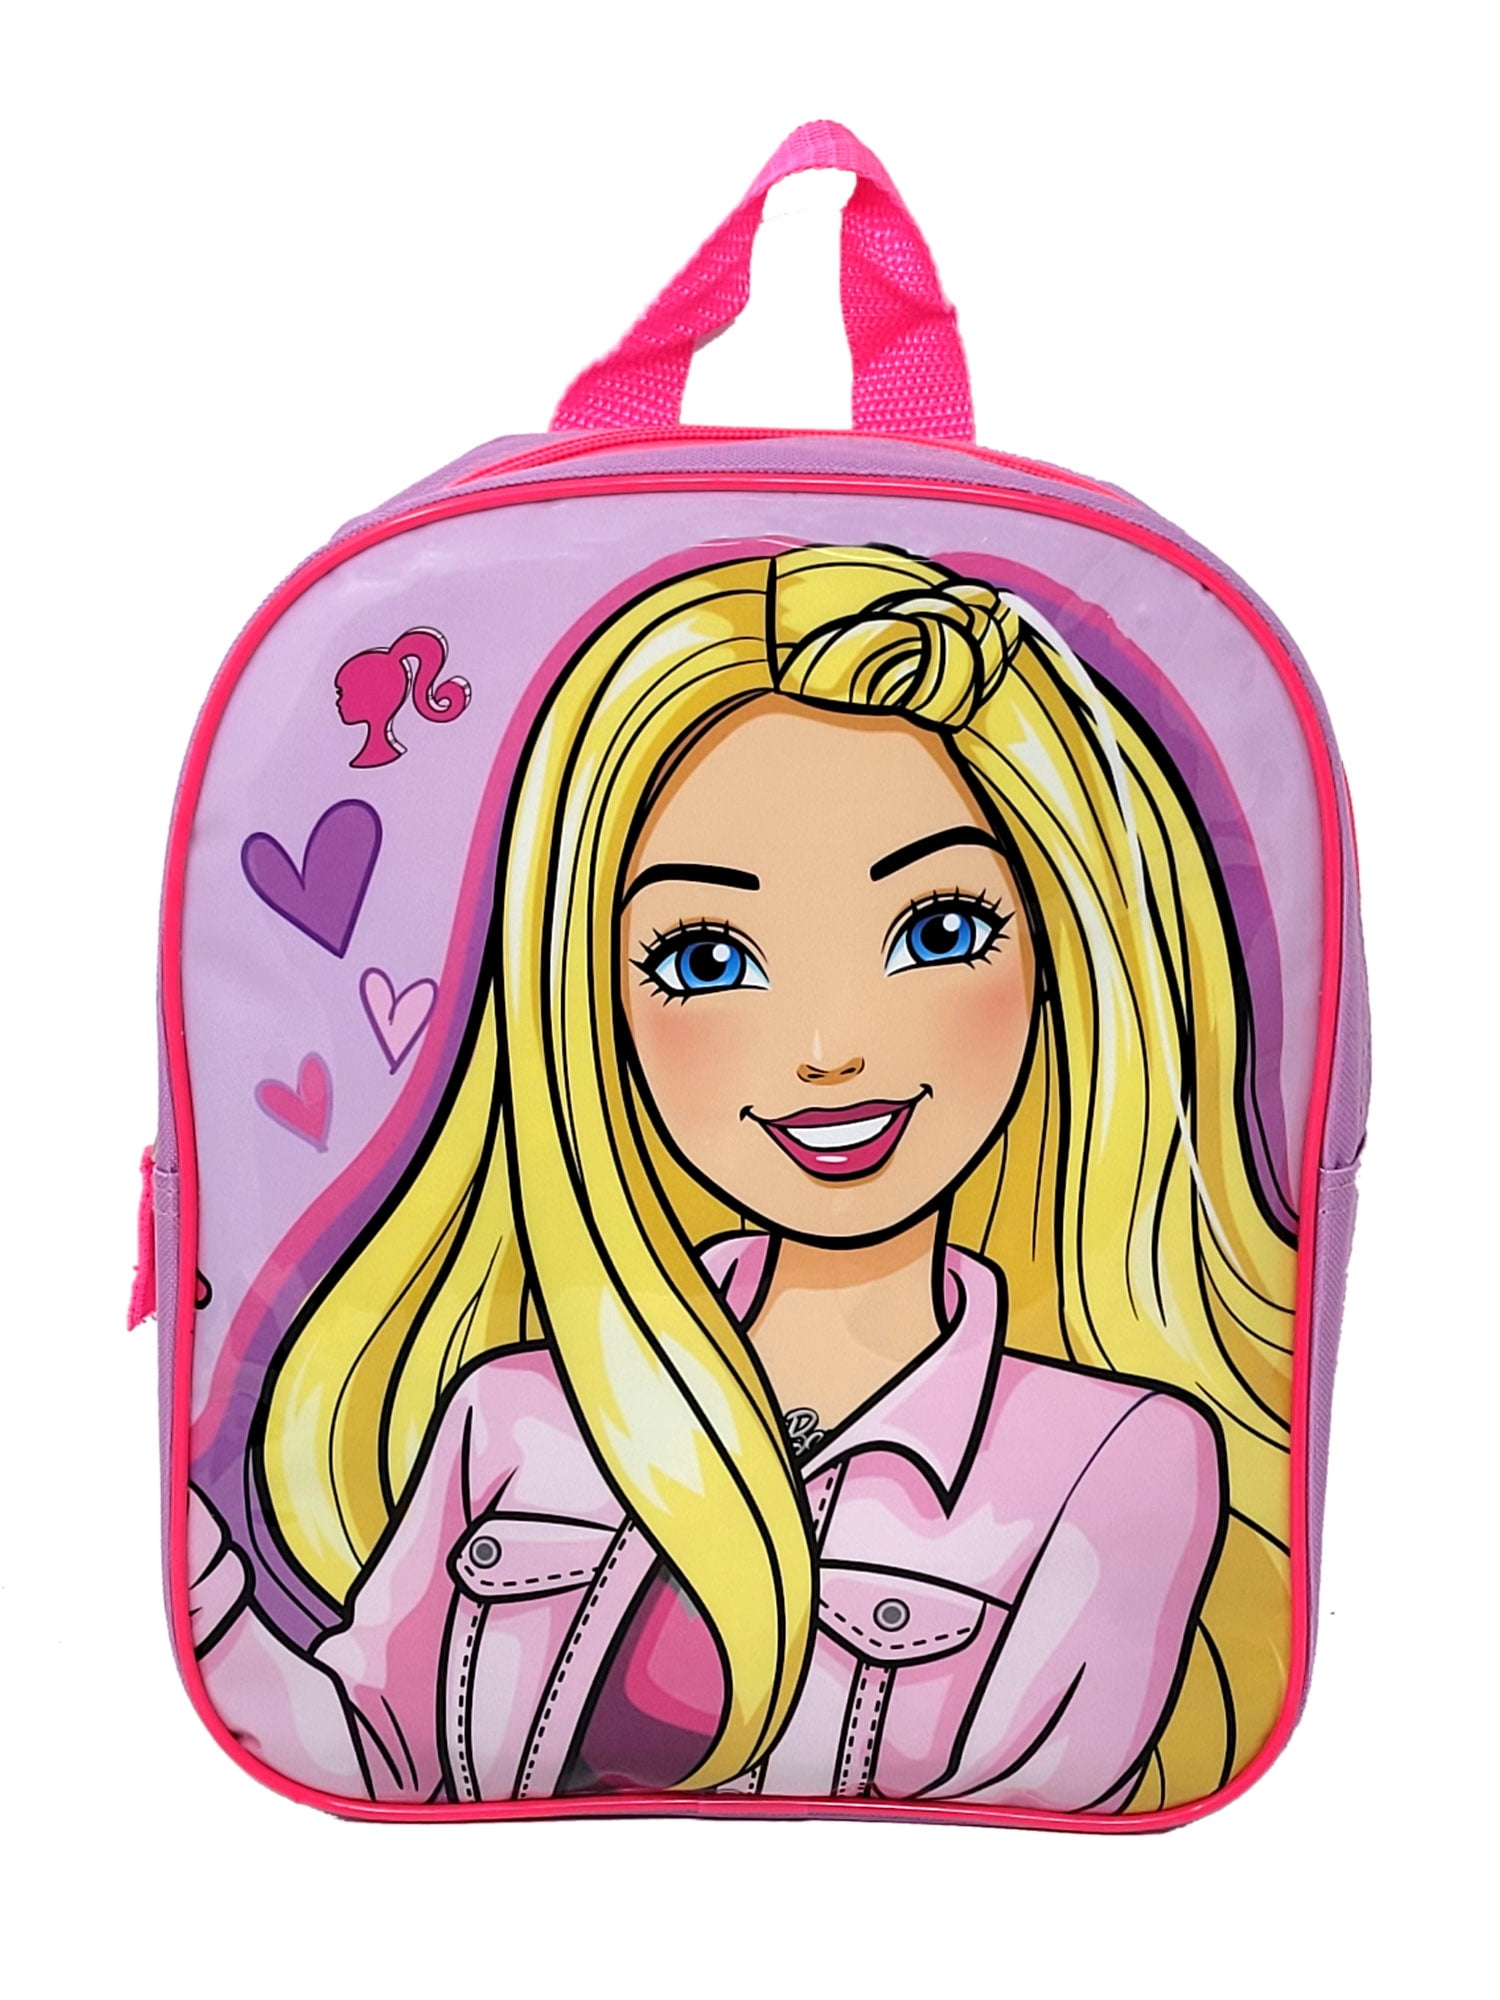 18 Inch Barbie Kids Luggage School Bag | Kids School bags